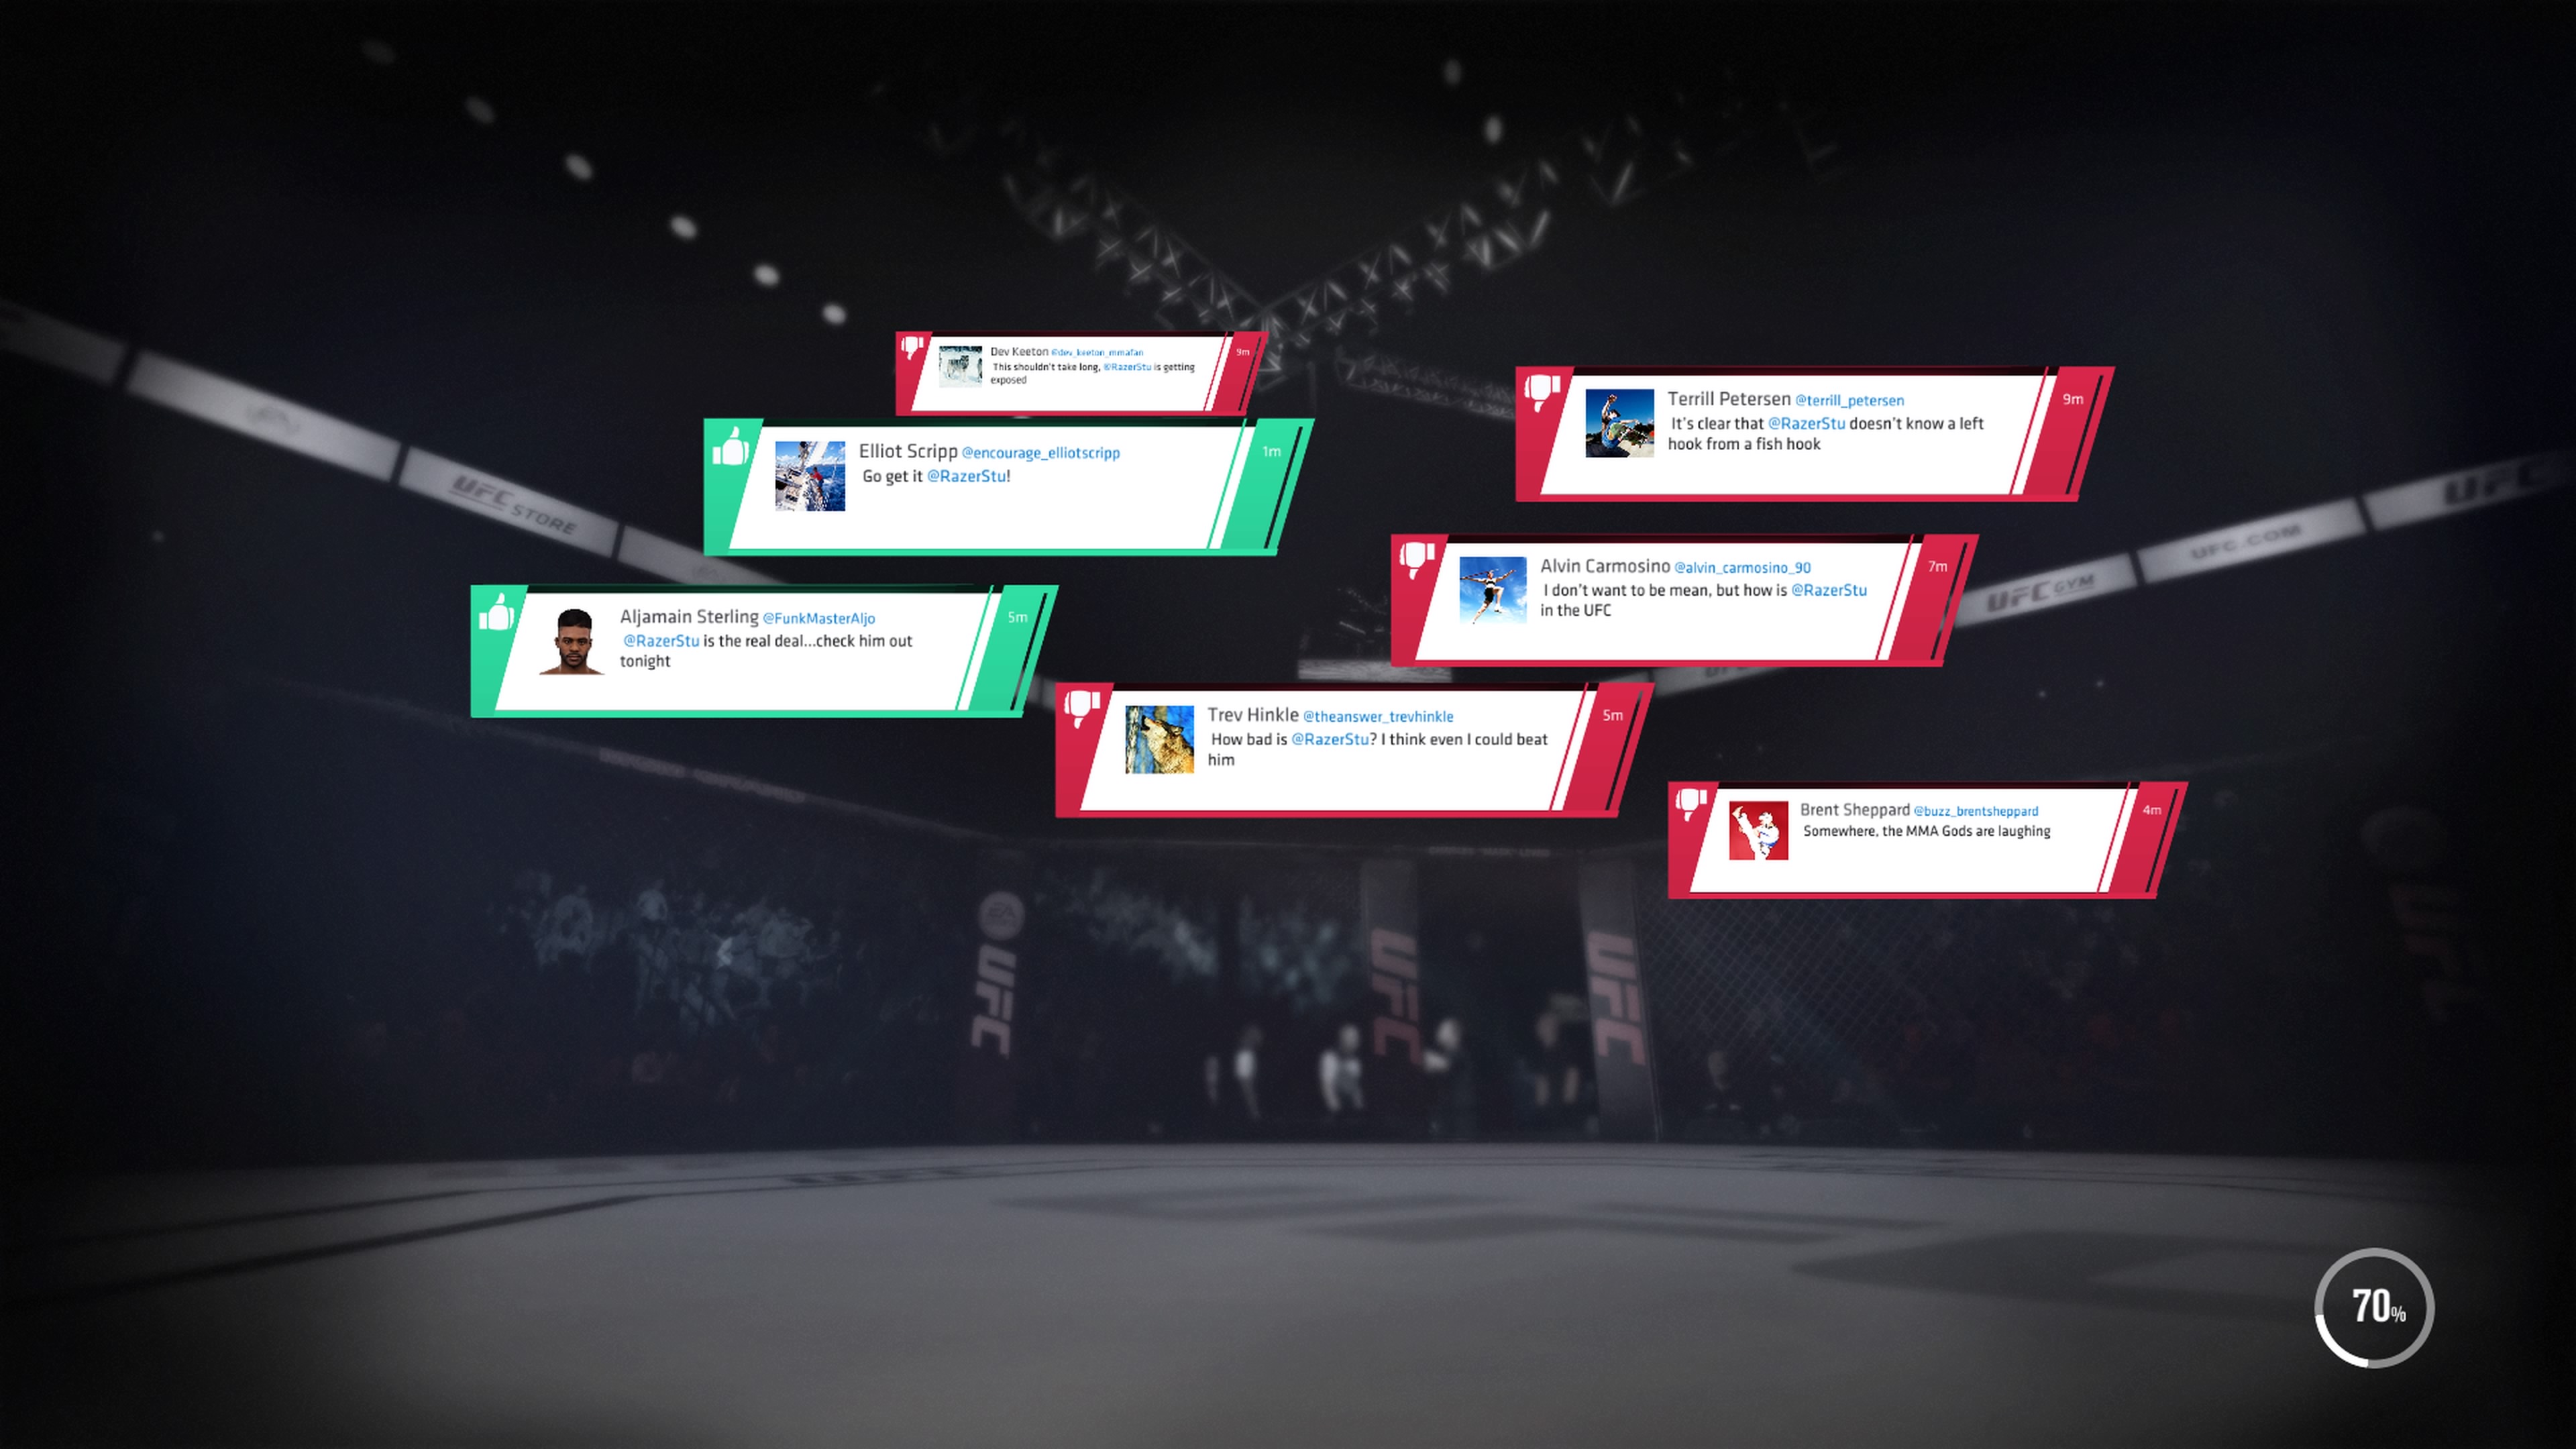 UFC 3 - Social Media